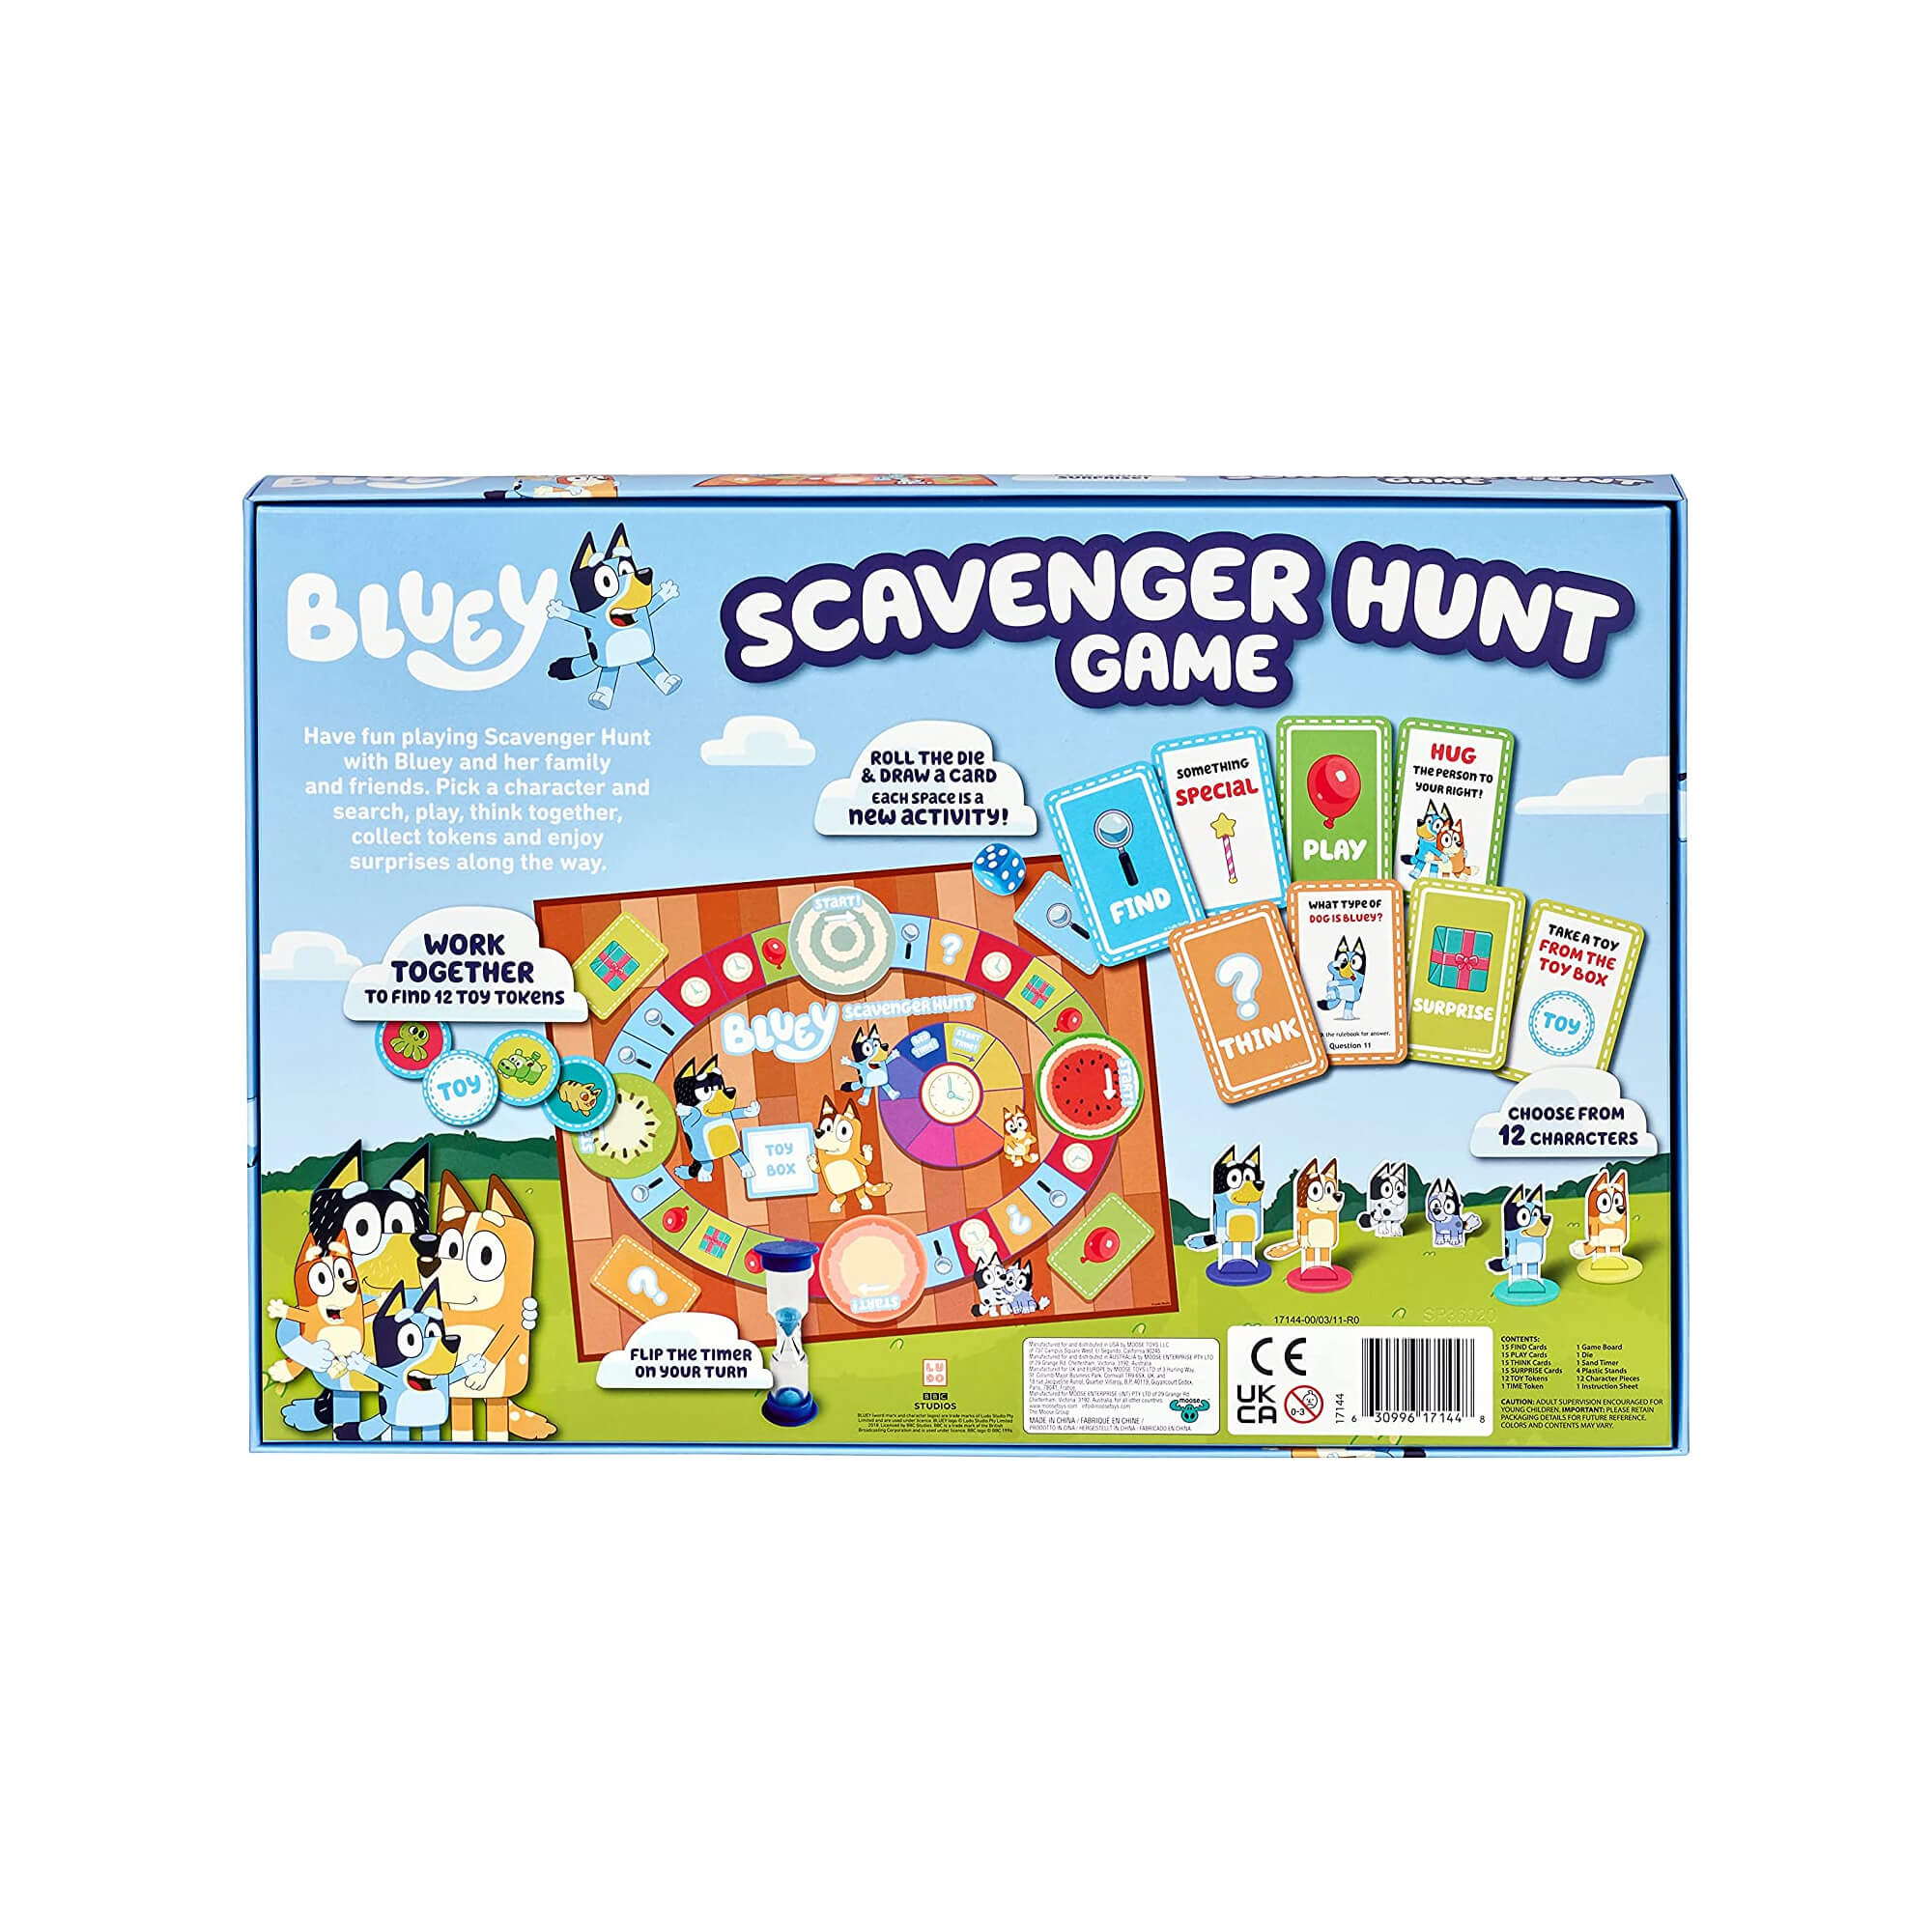 Bluey Scavenger Hunt Game Camp